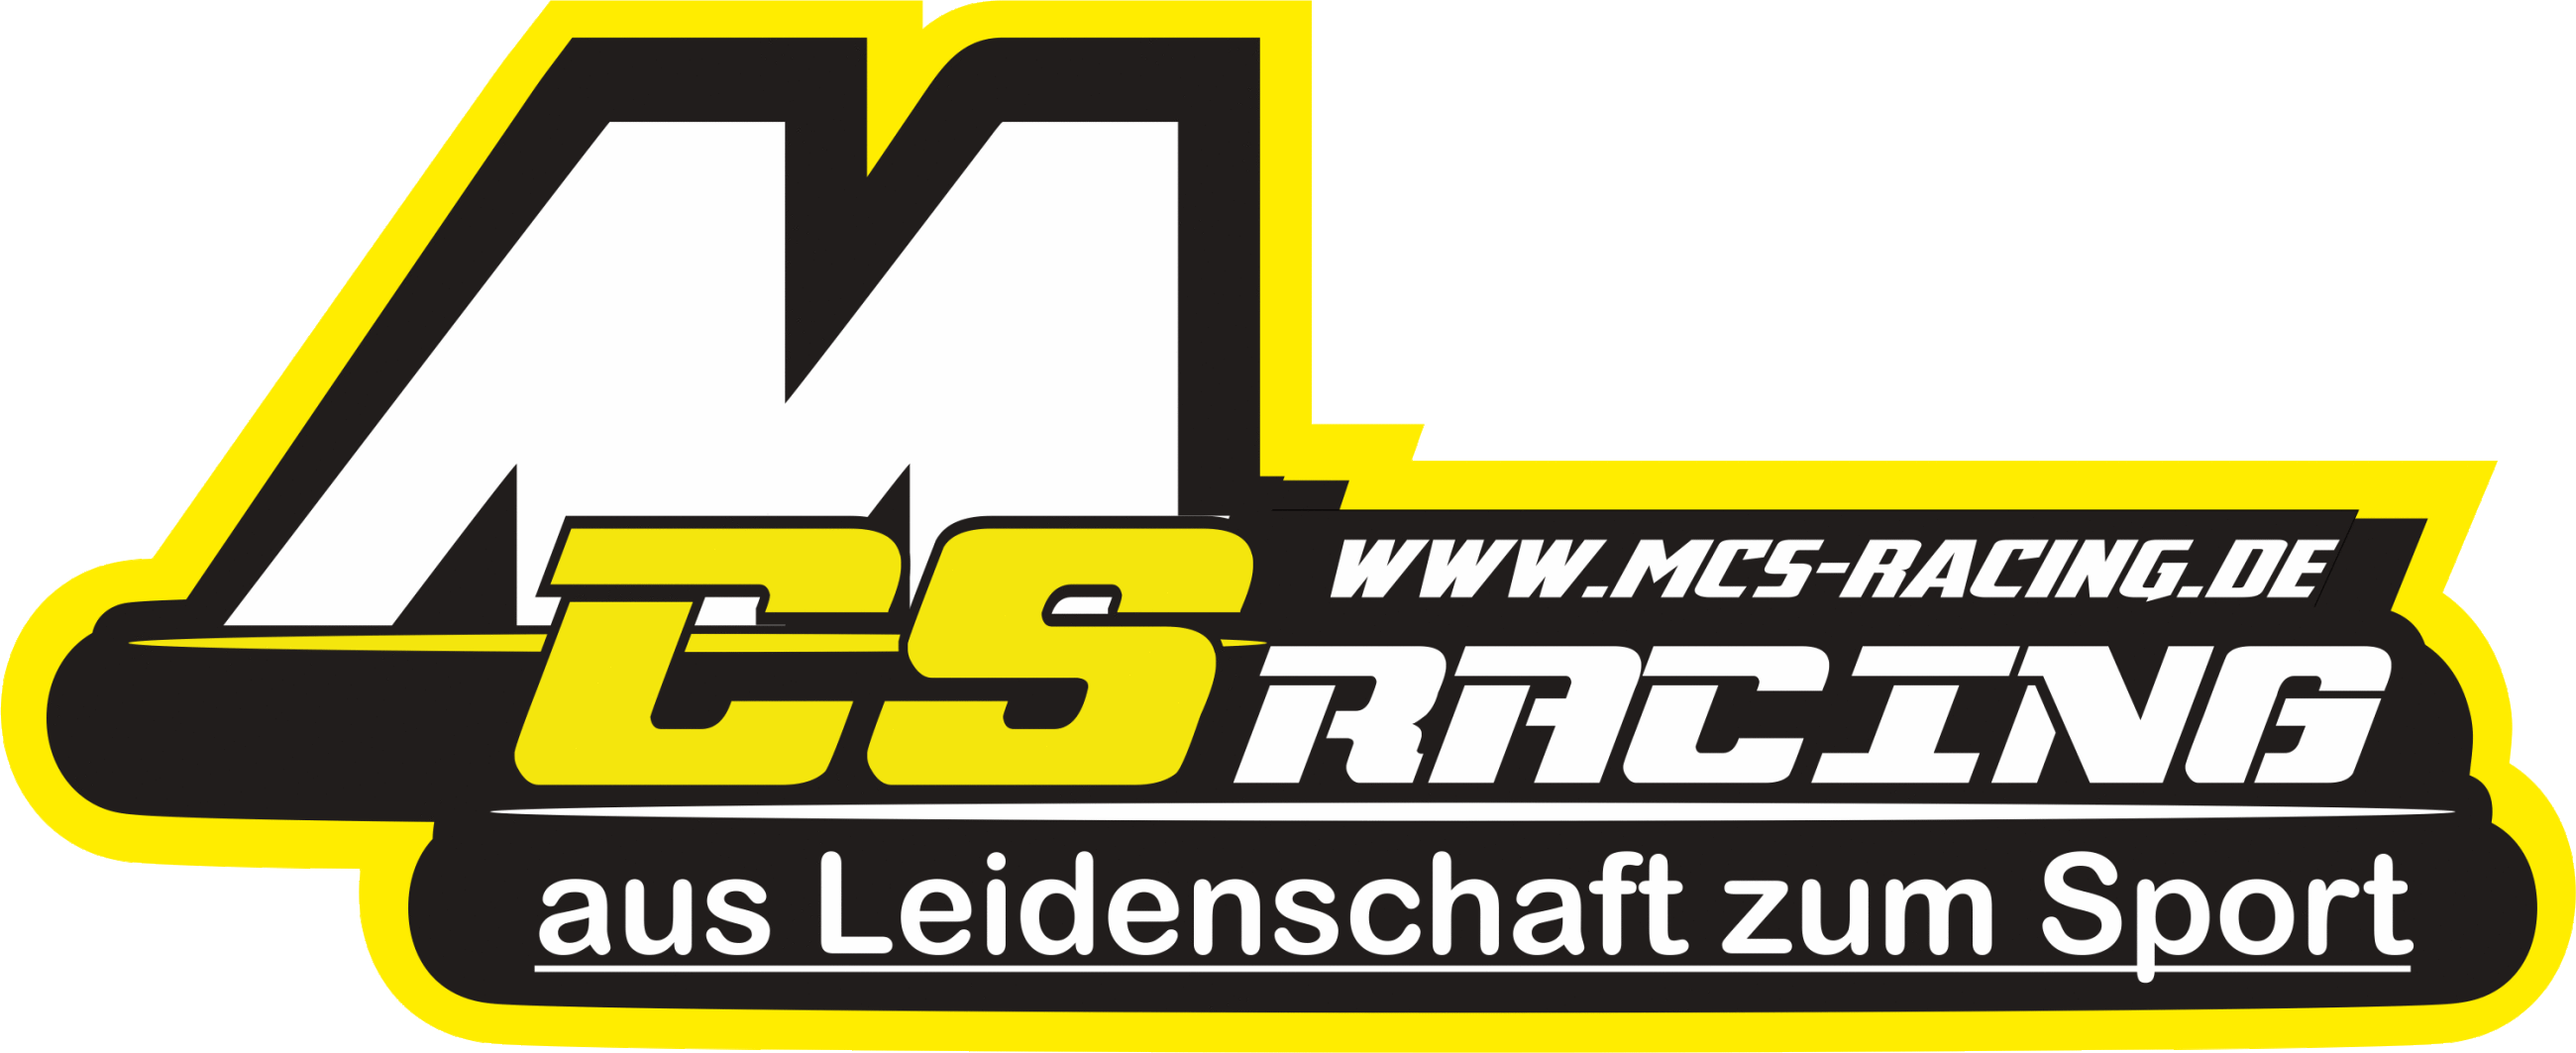 (c) Mcs-racing.de